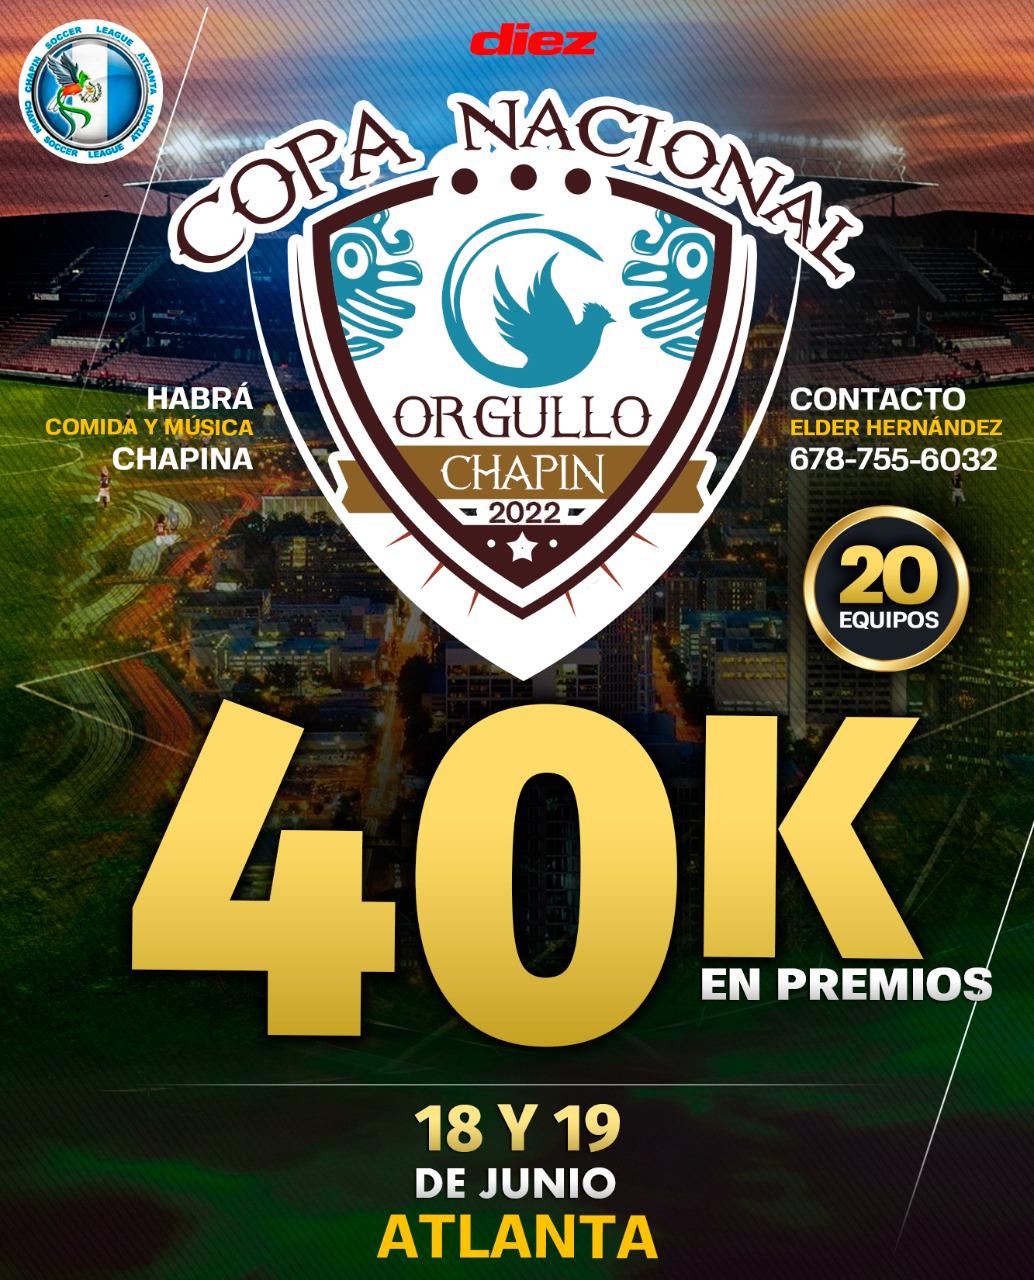 “Copa Nacional Orgullo Chapín”, un torneo exclusivo para equipos de Guatemala que entregará 40 mil dólares